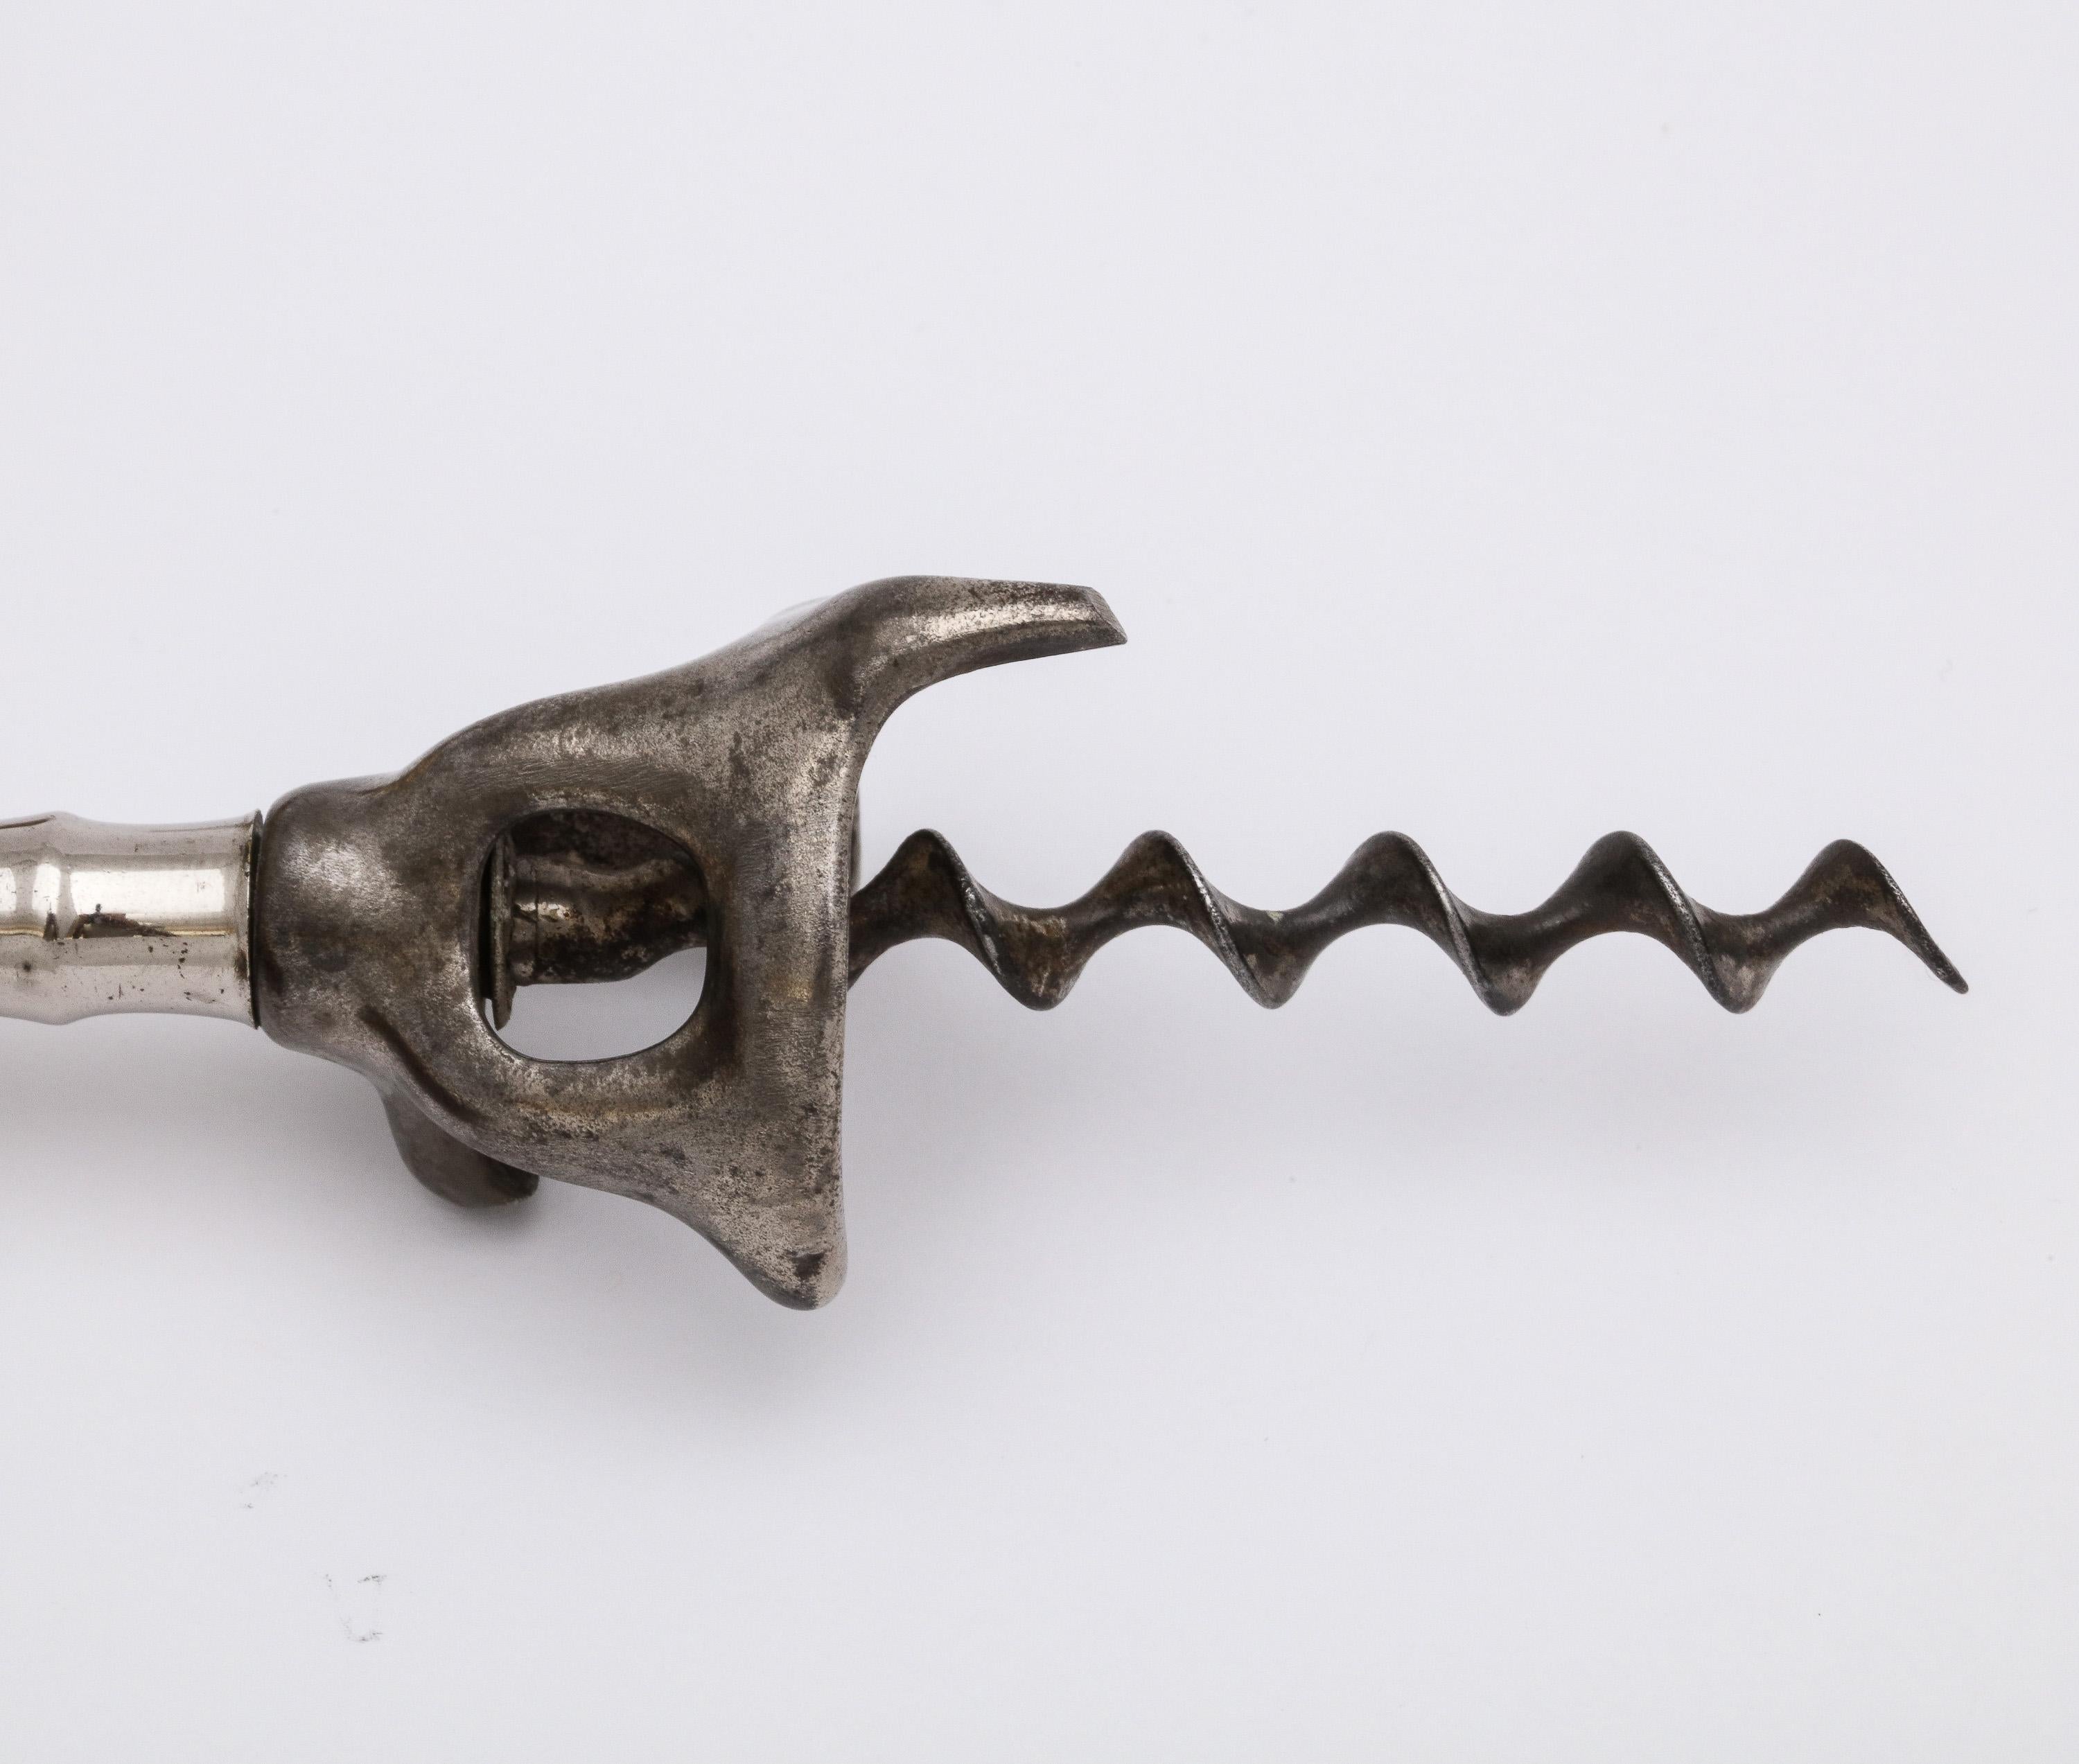 American Edwardian Period Sterling Silver-Mounted Boar's Tusk Corkscrew